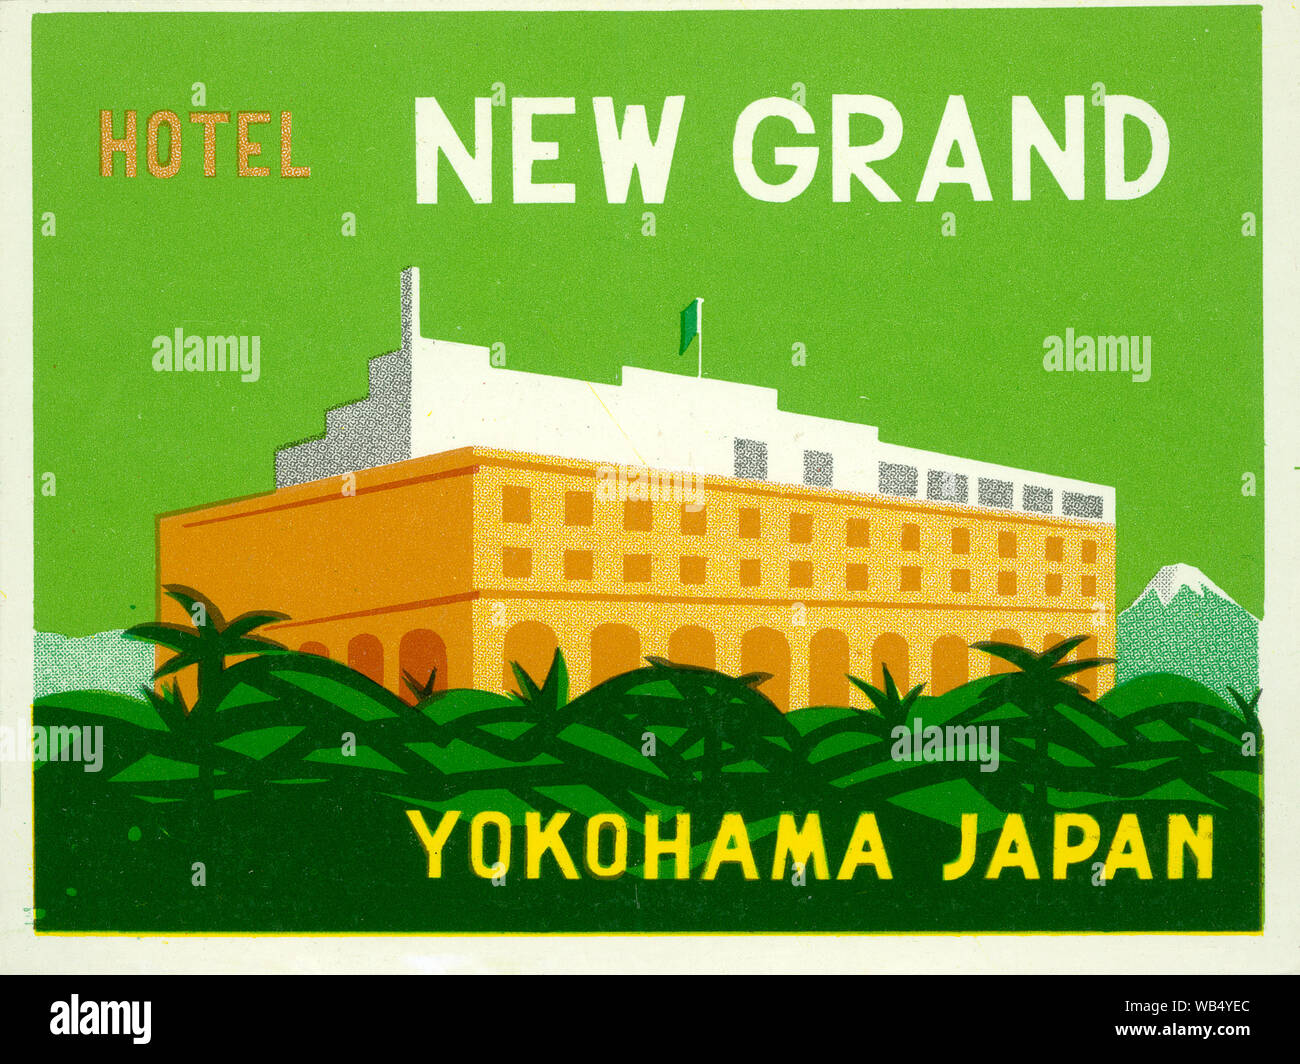 [ Pre-guerra en el Japón - Yokohama Grand Hotel Nueva etiqueta ] - Etiqueta de Equipaje para el Nuevo Grand Hotel en Yokohama Yokohama, Prefectura. Etiqueta Vintage del siglo xx. Foto de stock